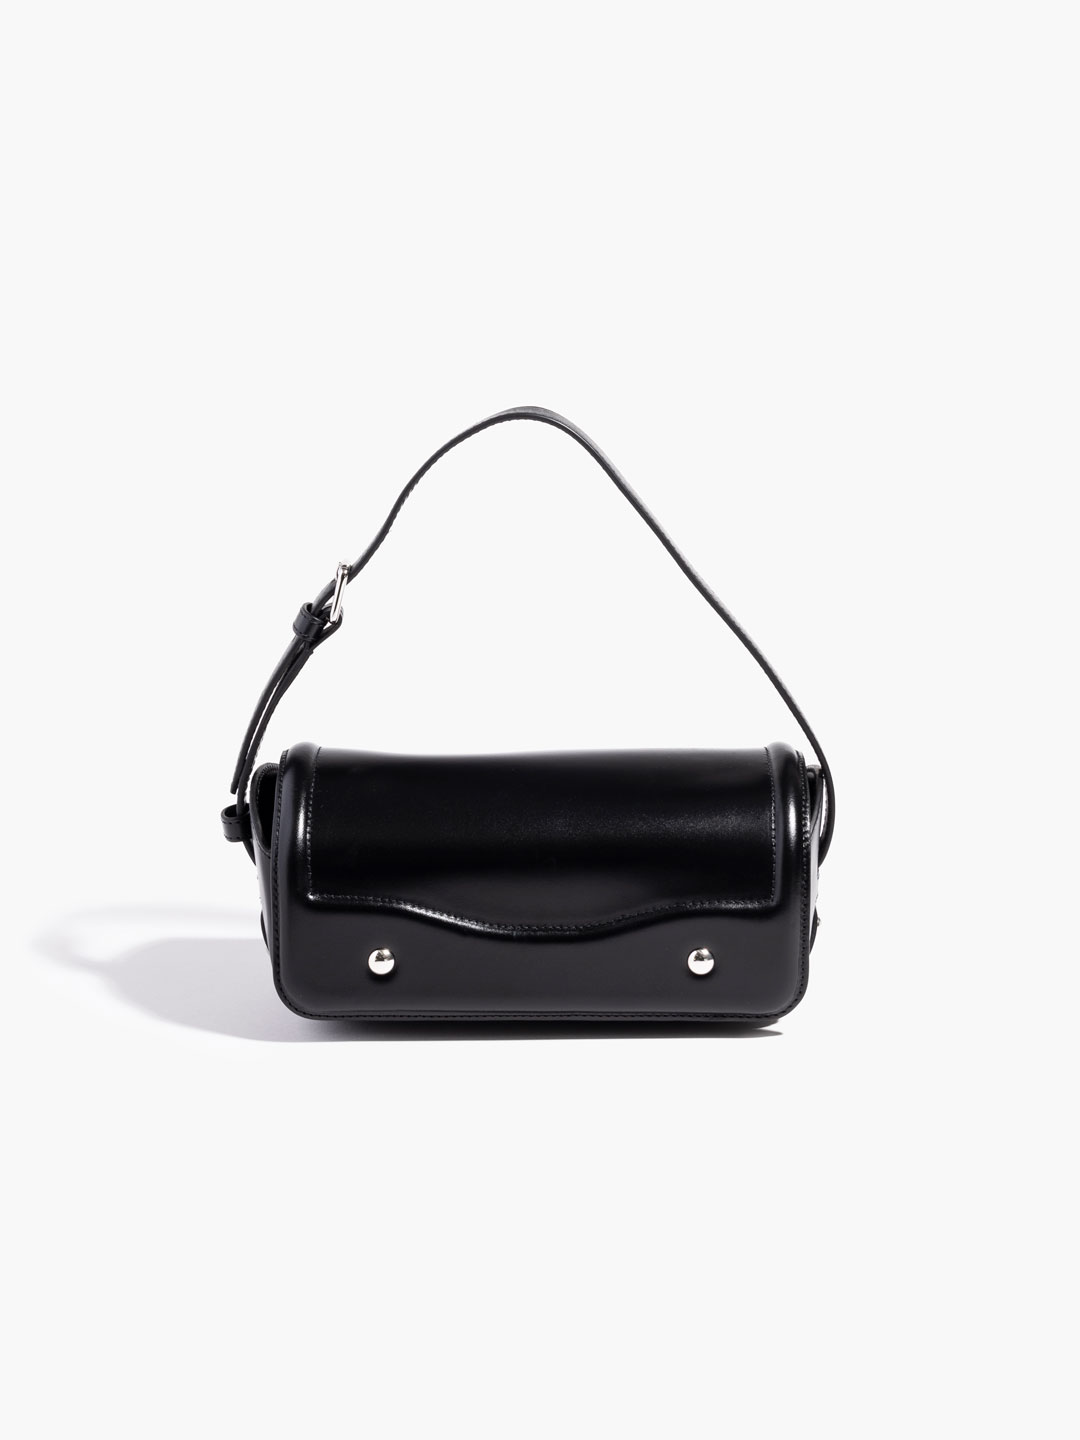 Ransel Handbag - Black